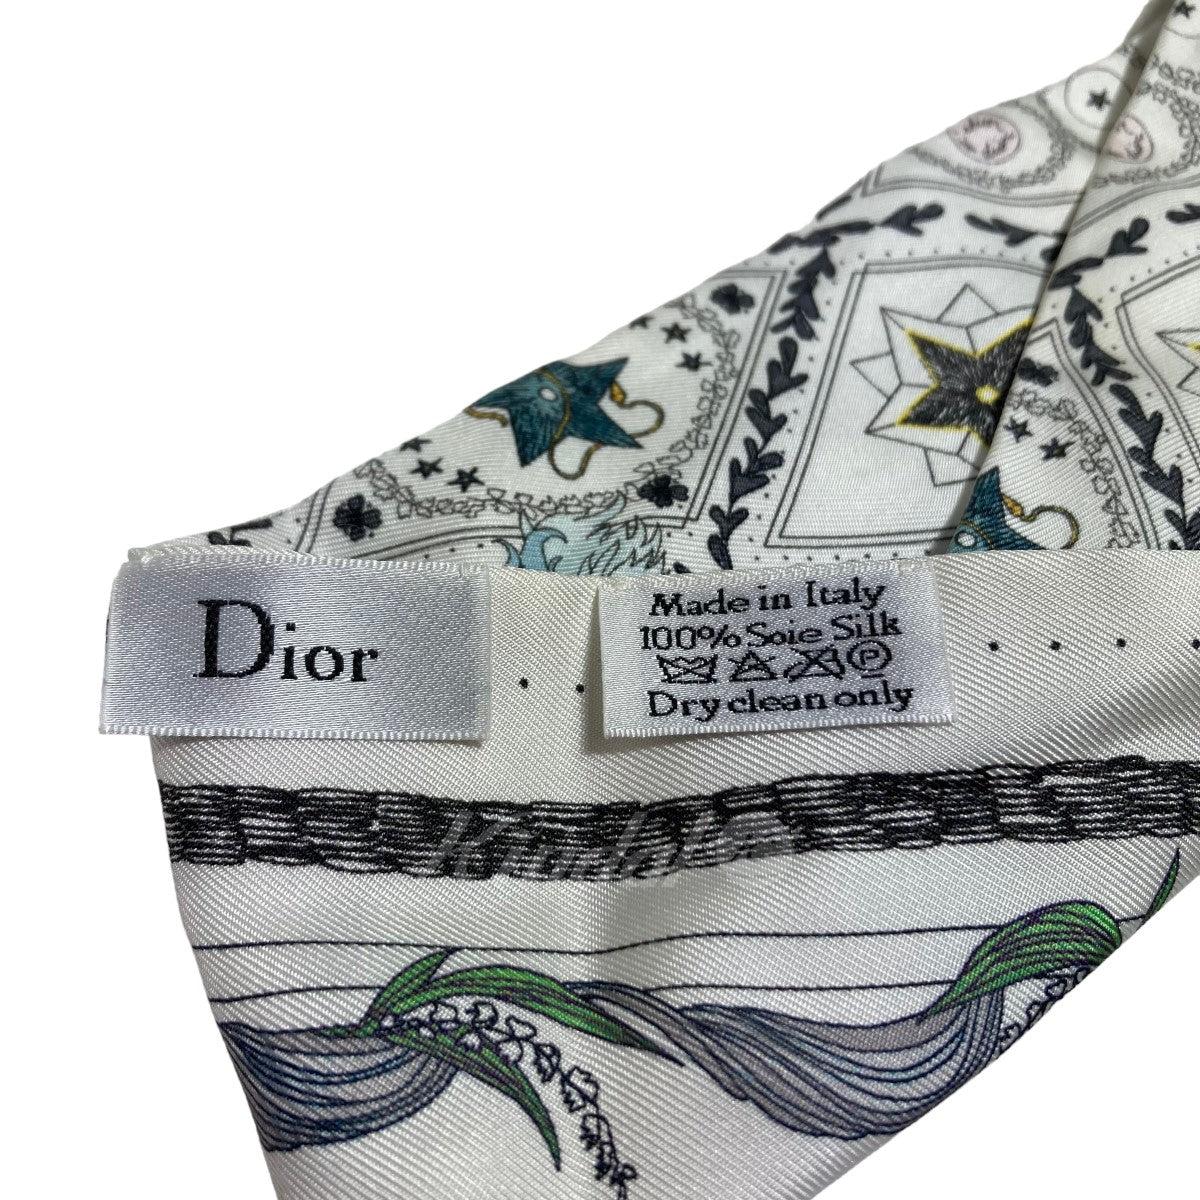 Dior(ディオール) ミッツァ スカーフ タロット ホワイト サイズ 12 